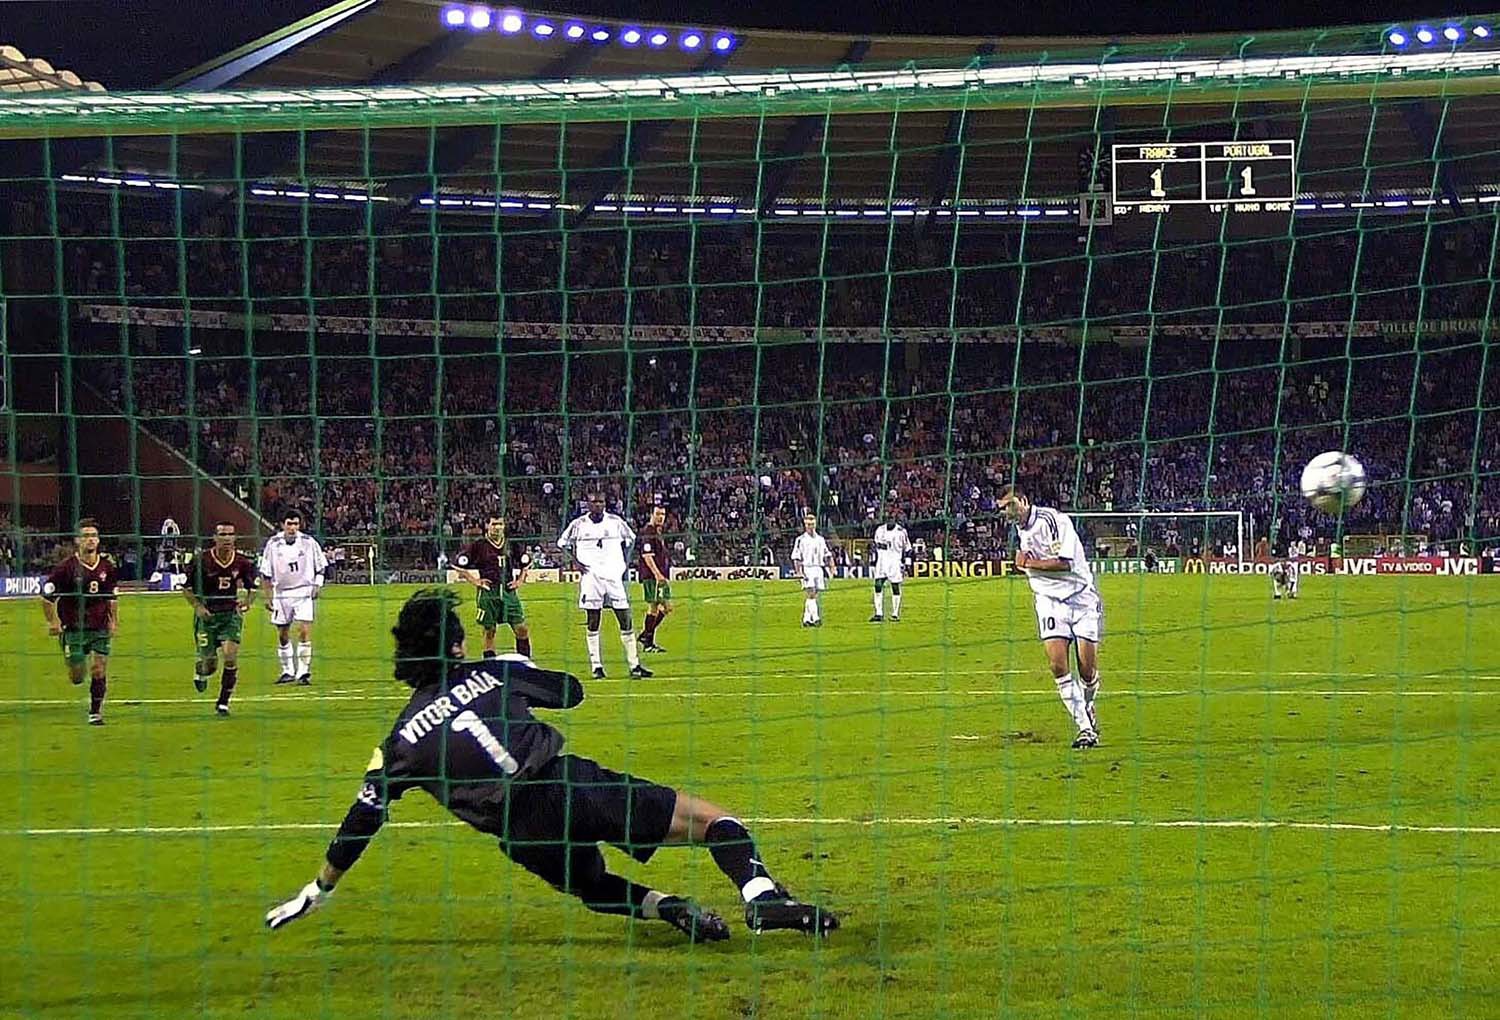 Nhìn lại 5 phút cay đắng của Bồ Đào Nha trước Pháp tại EURO 2000